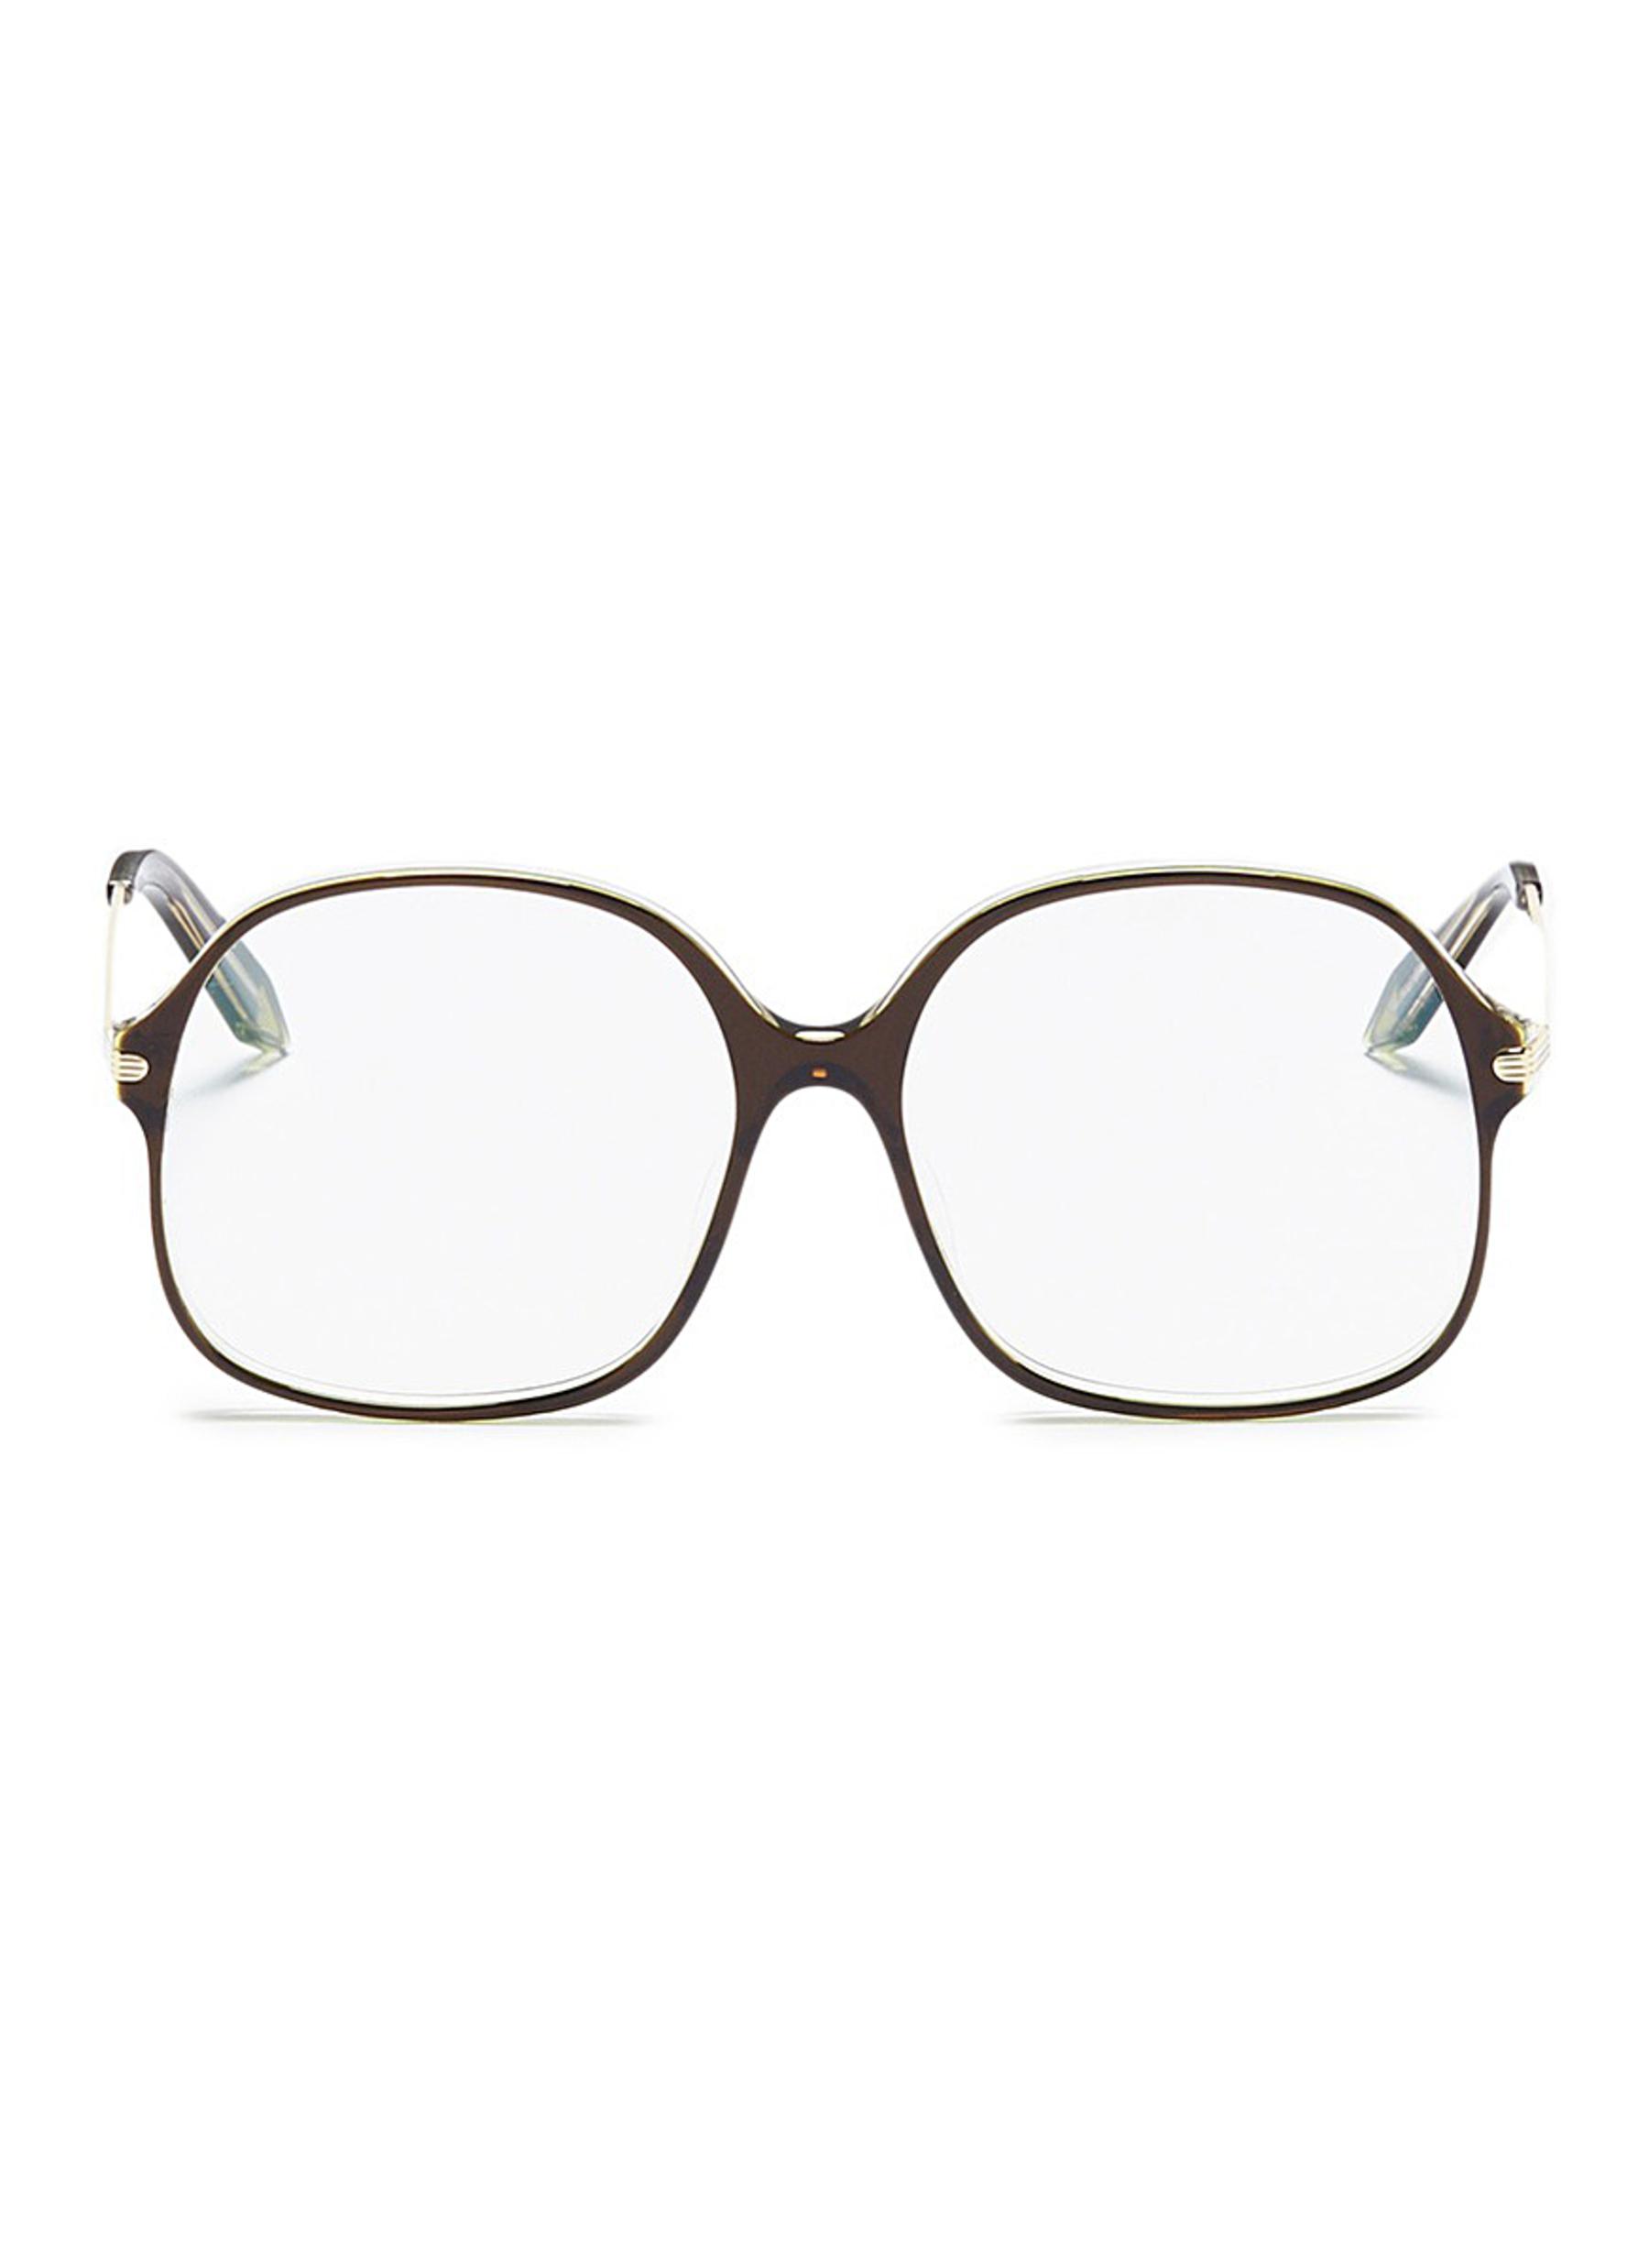 Acetate square optical glasses